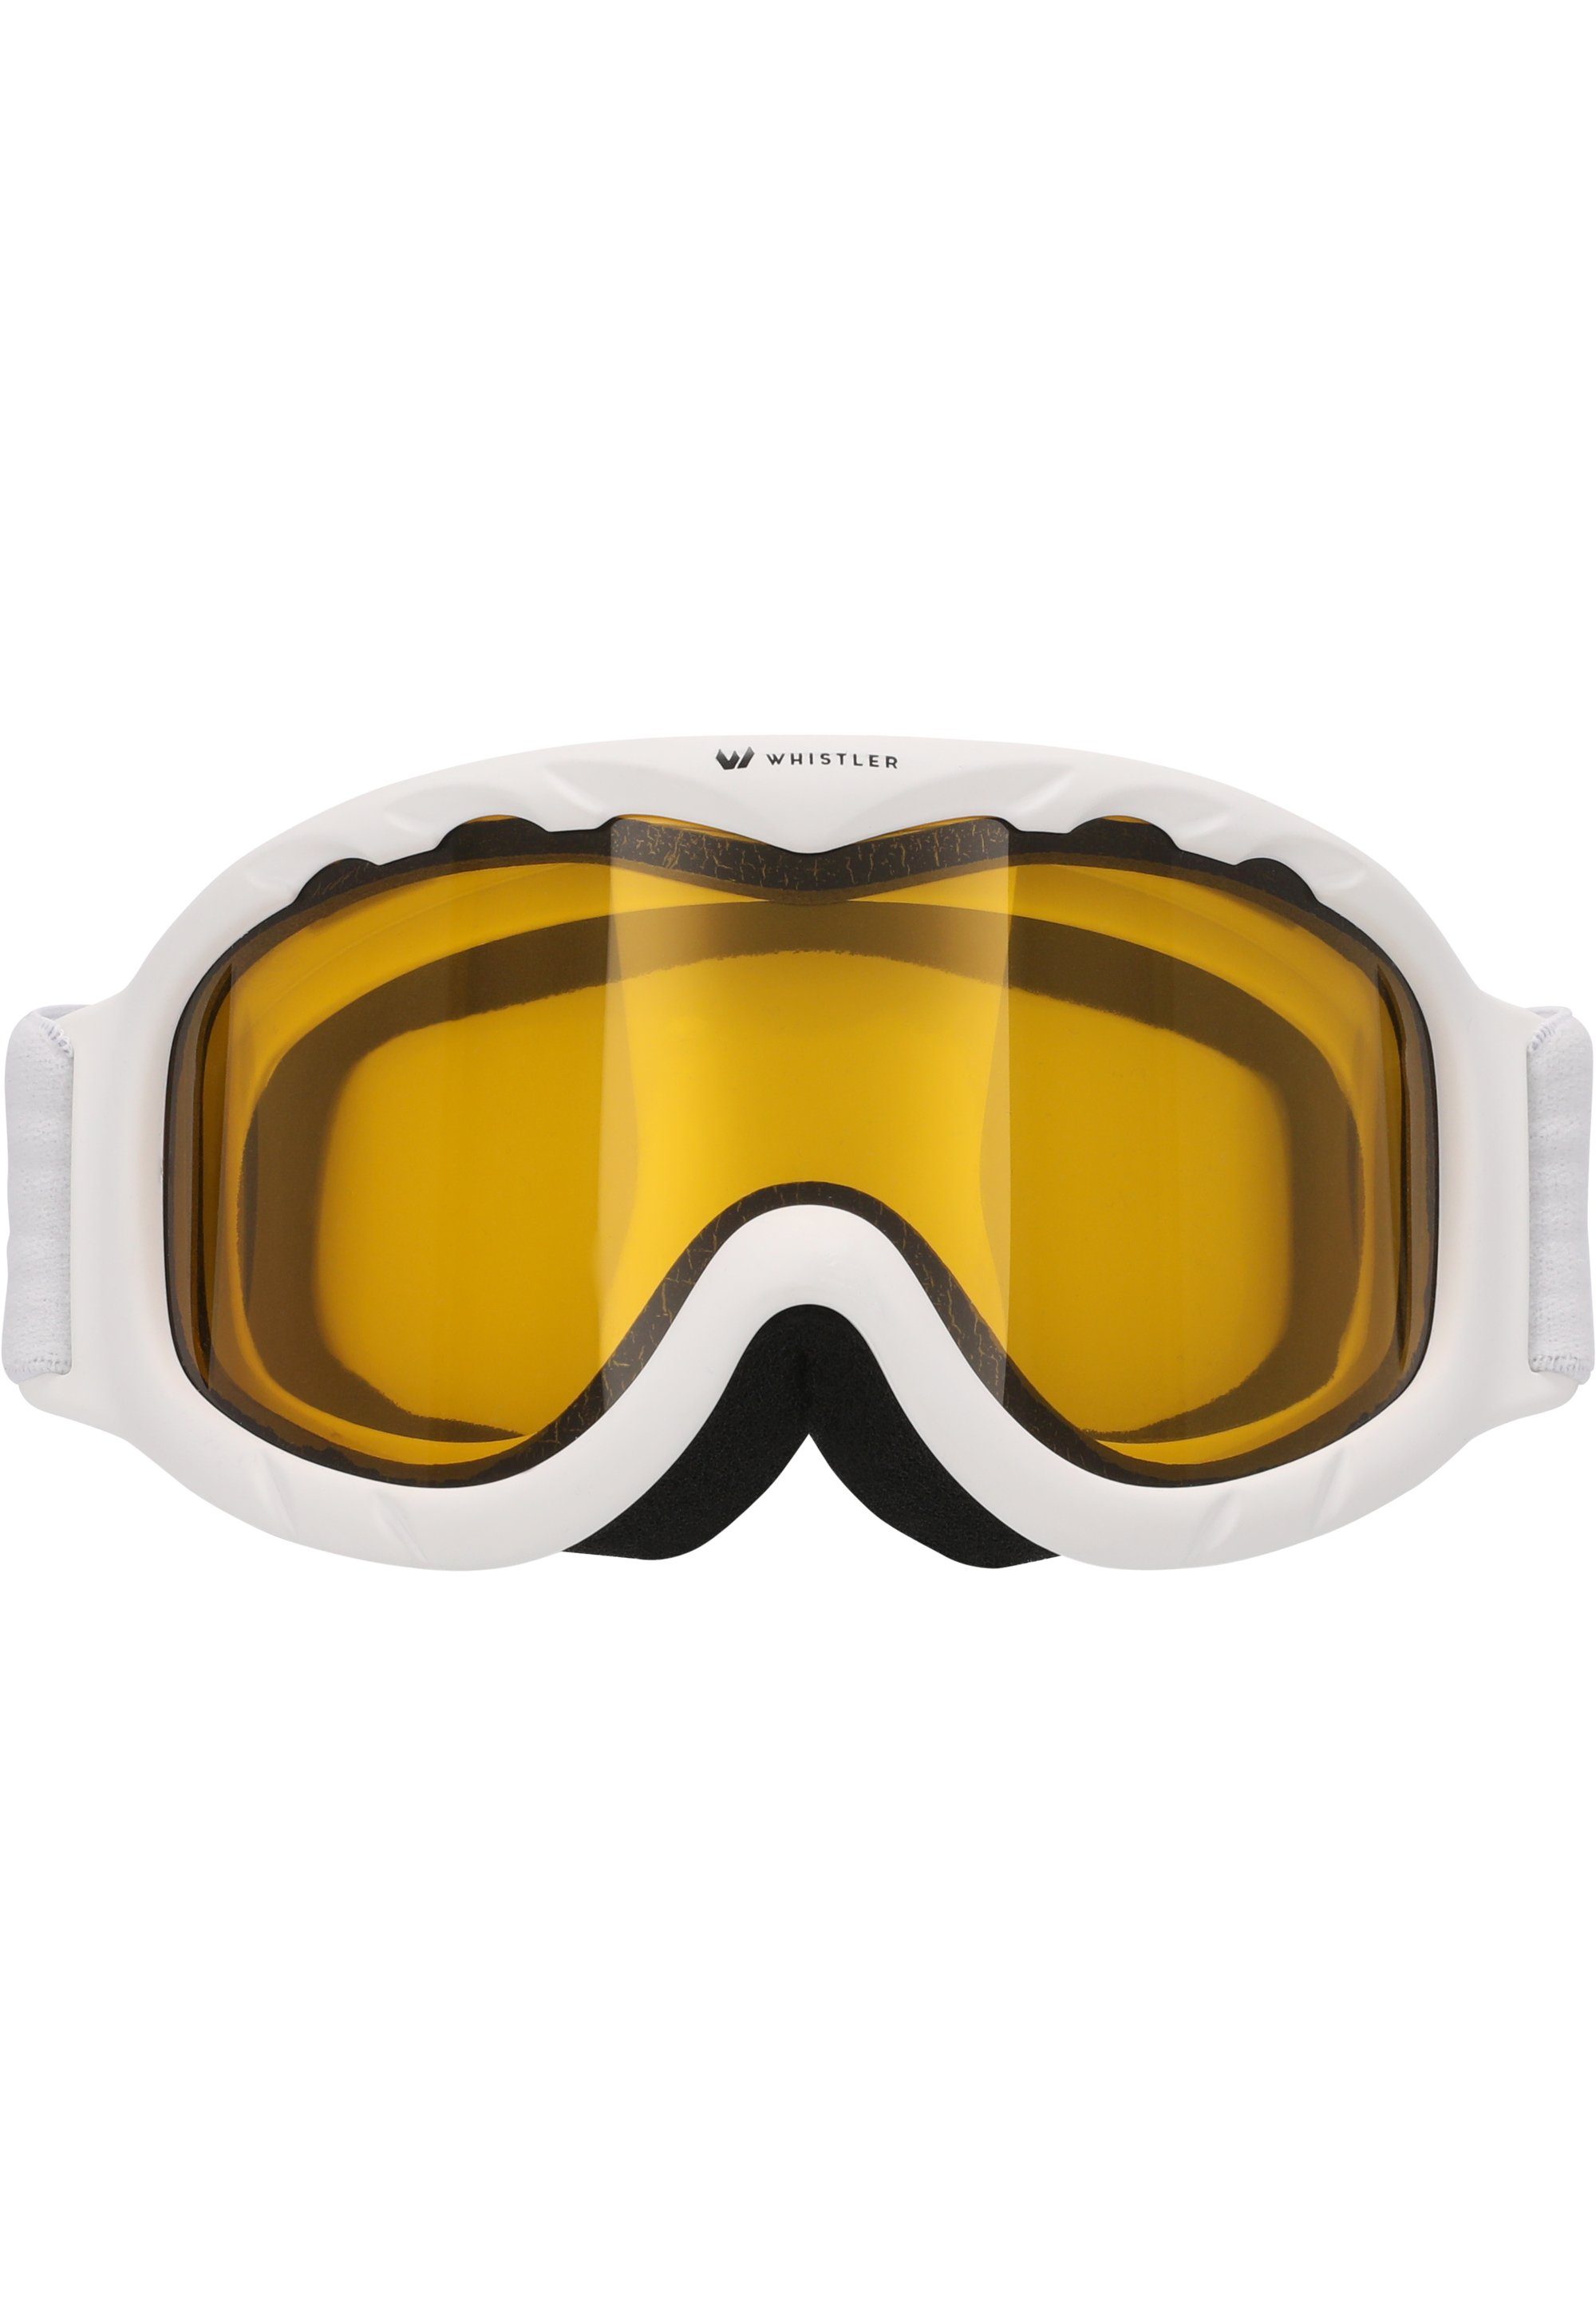 WHISTLER Skibrille WS300 Jr. Ski mit Goggle, Anti-Fog-Beschichtung weiß